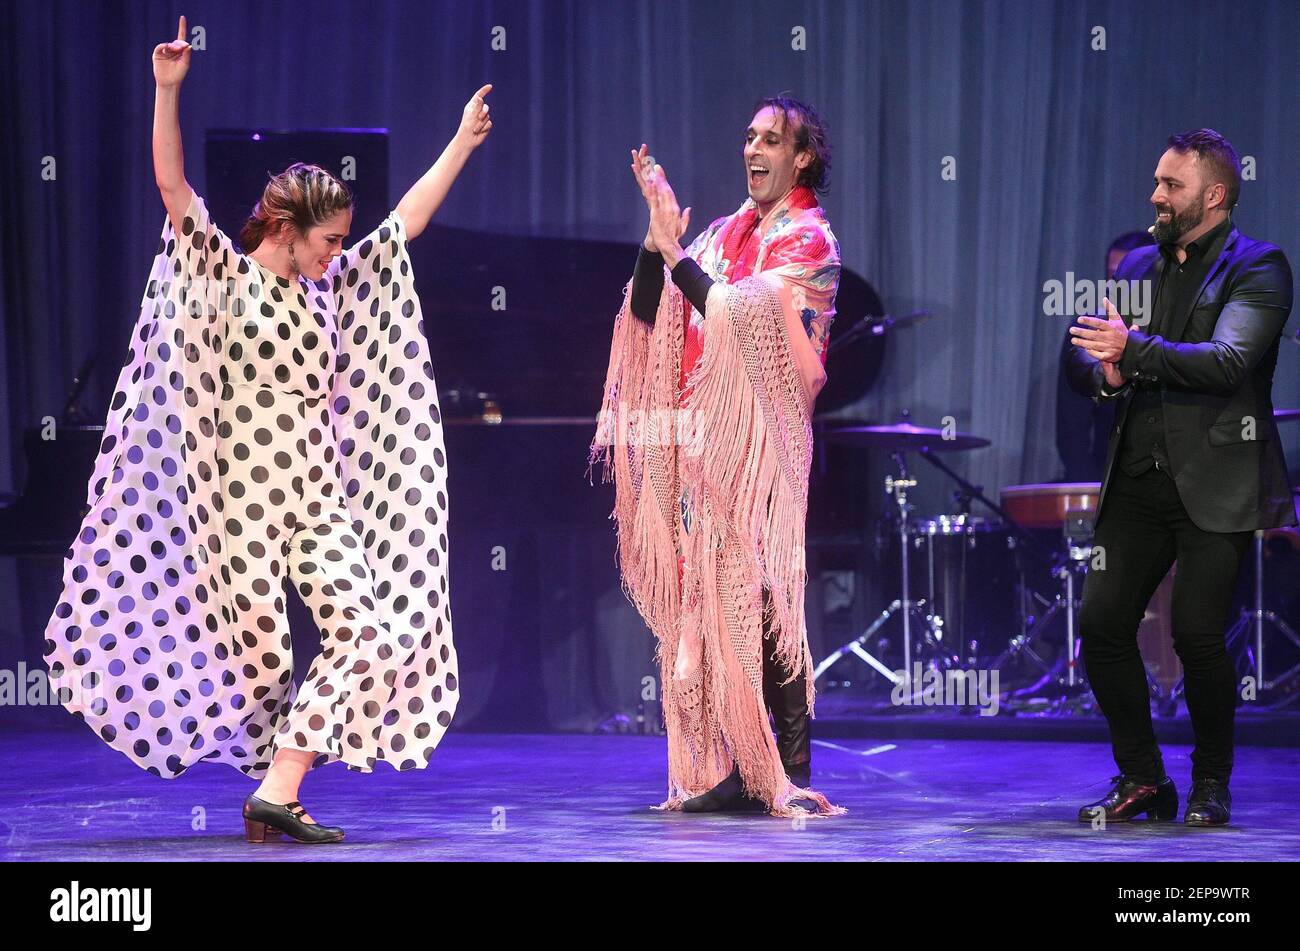 XVIII Festival Internacional 'Viva España!'. Estrellas del flamenco  español. La actuación en solitario del coreógrafo español Ruben Olmo 'Horas  Contigo' (horas con usted) en el escenario del Teatro Folklórico de la  canción